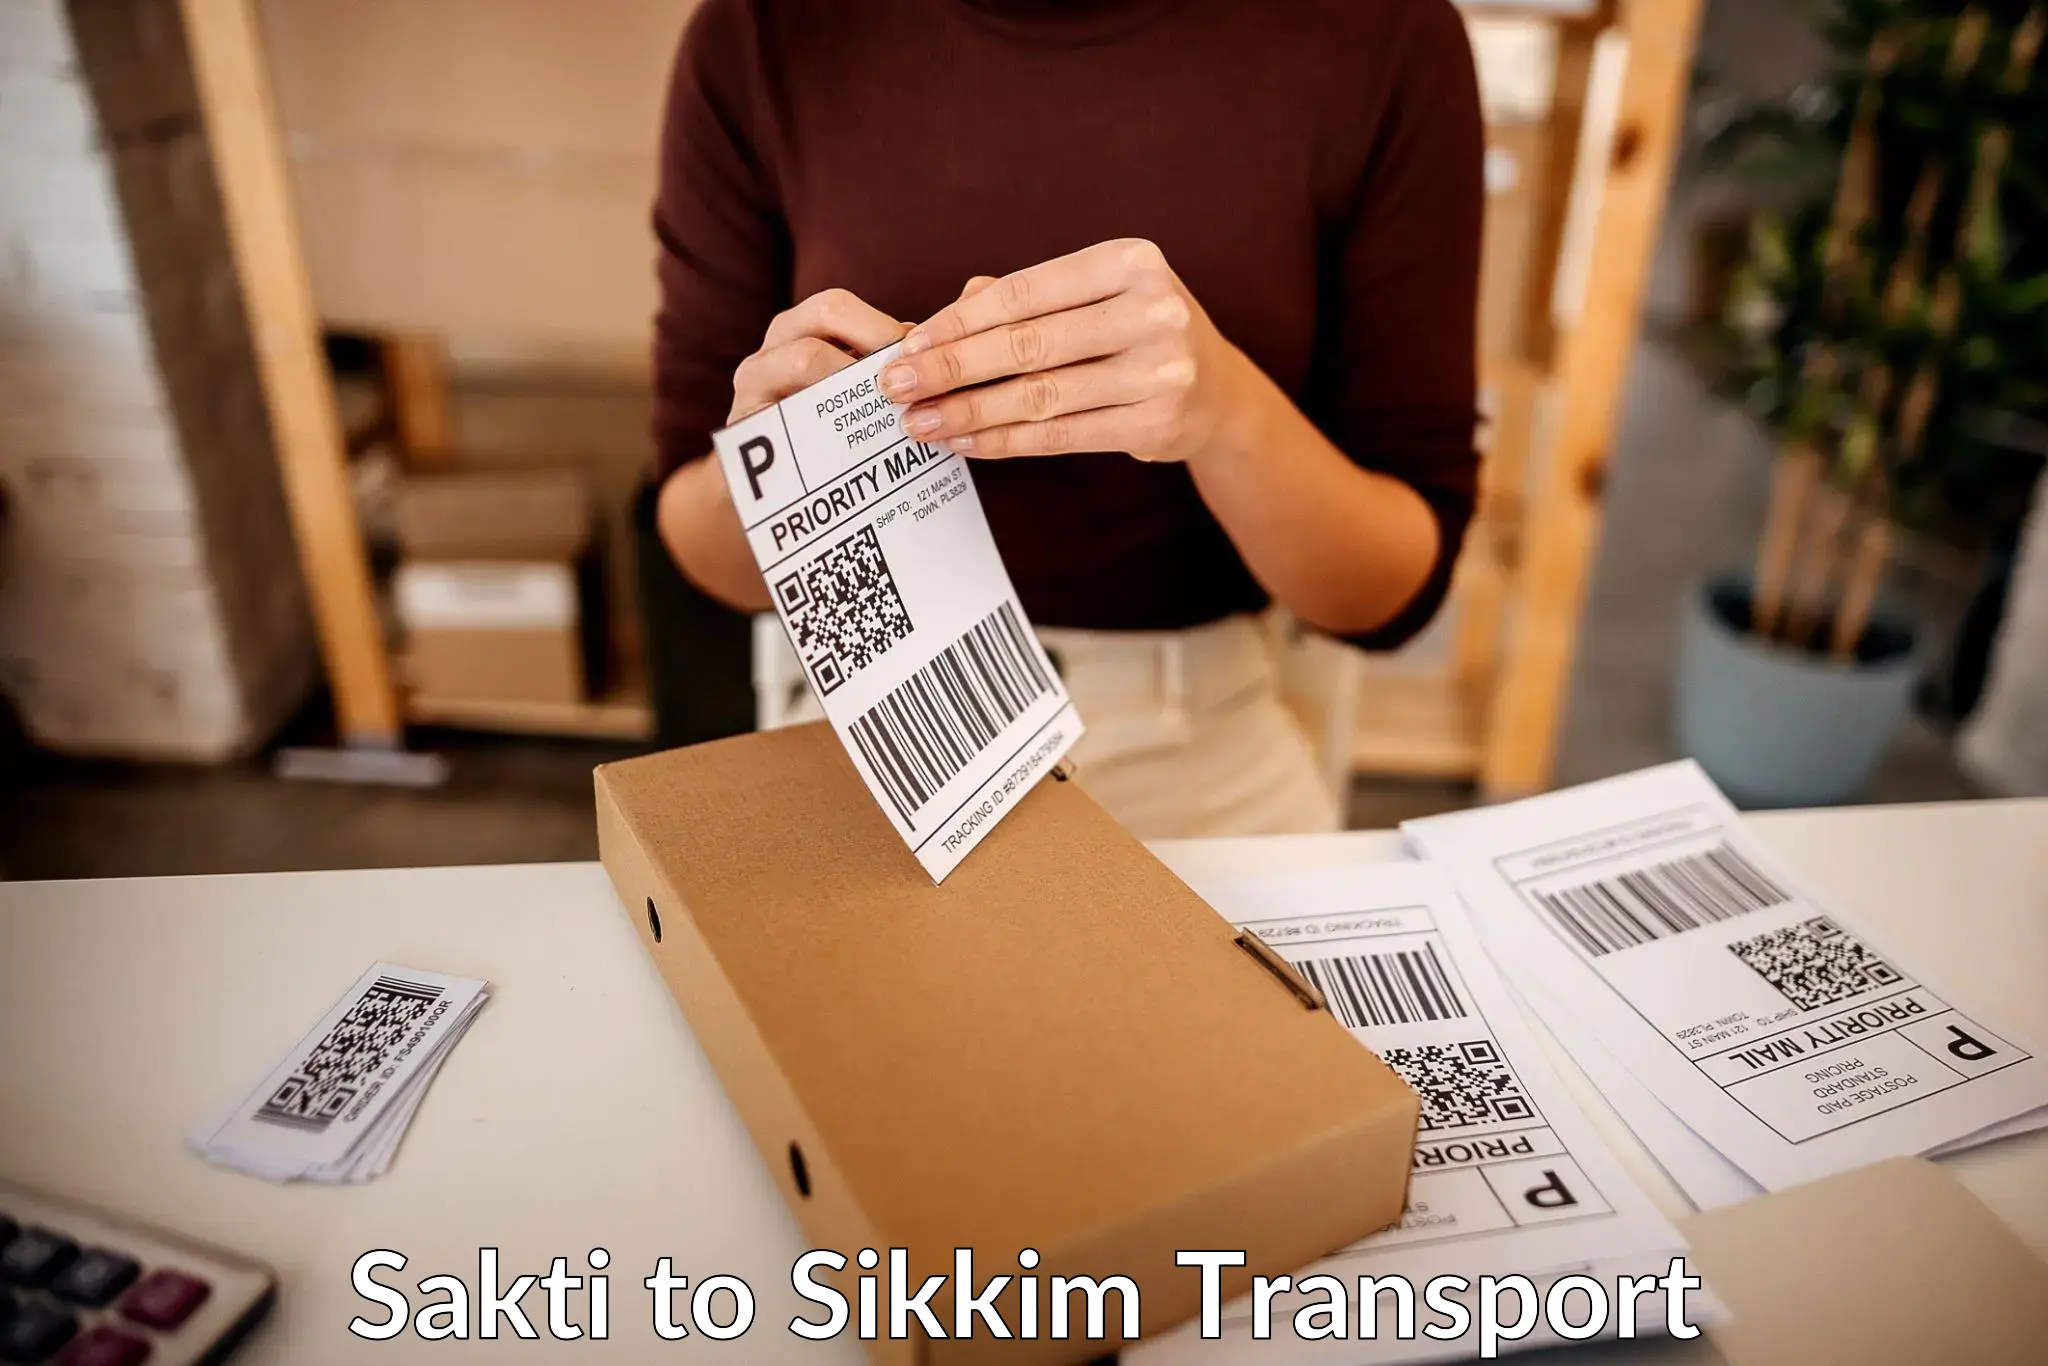 Two wheeler parcel service Sakti to Mangan